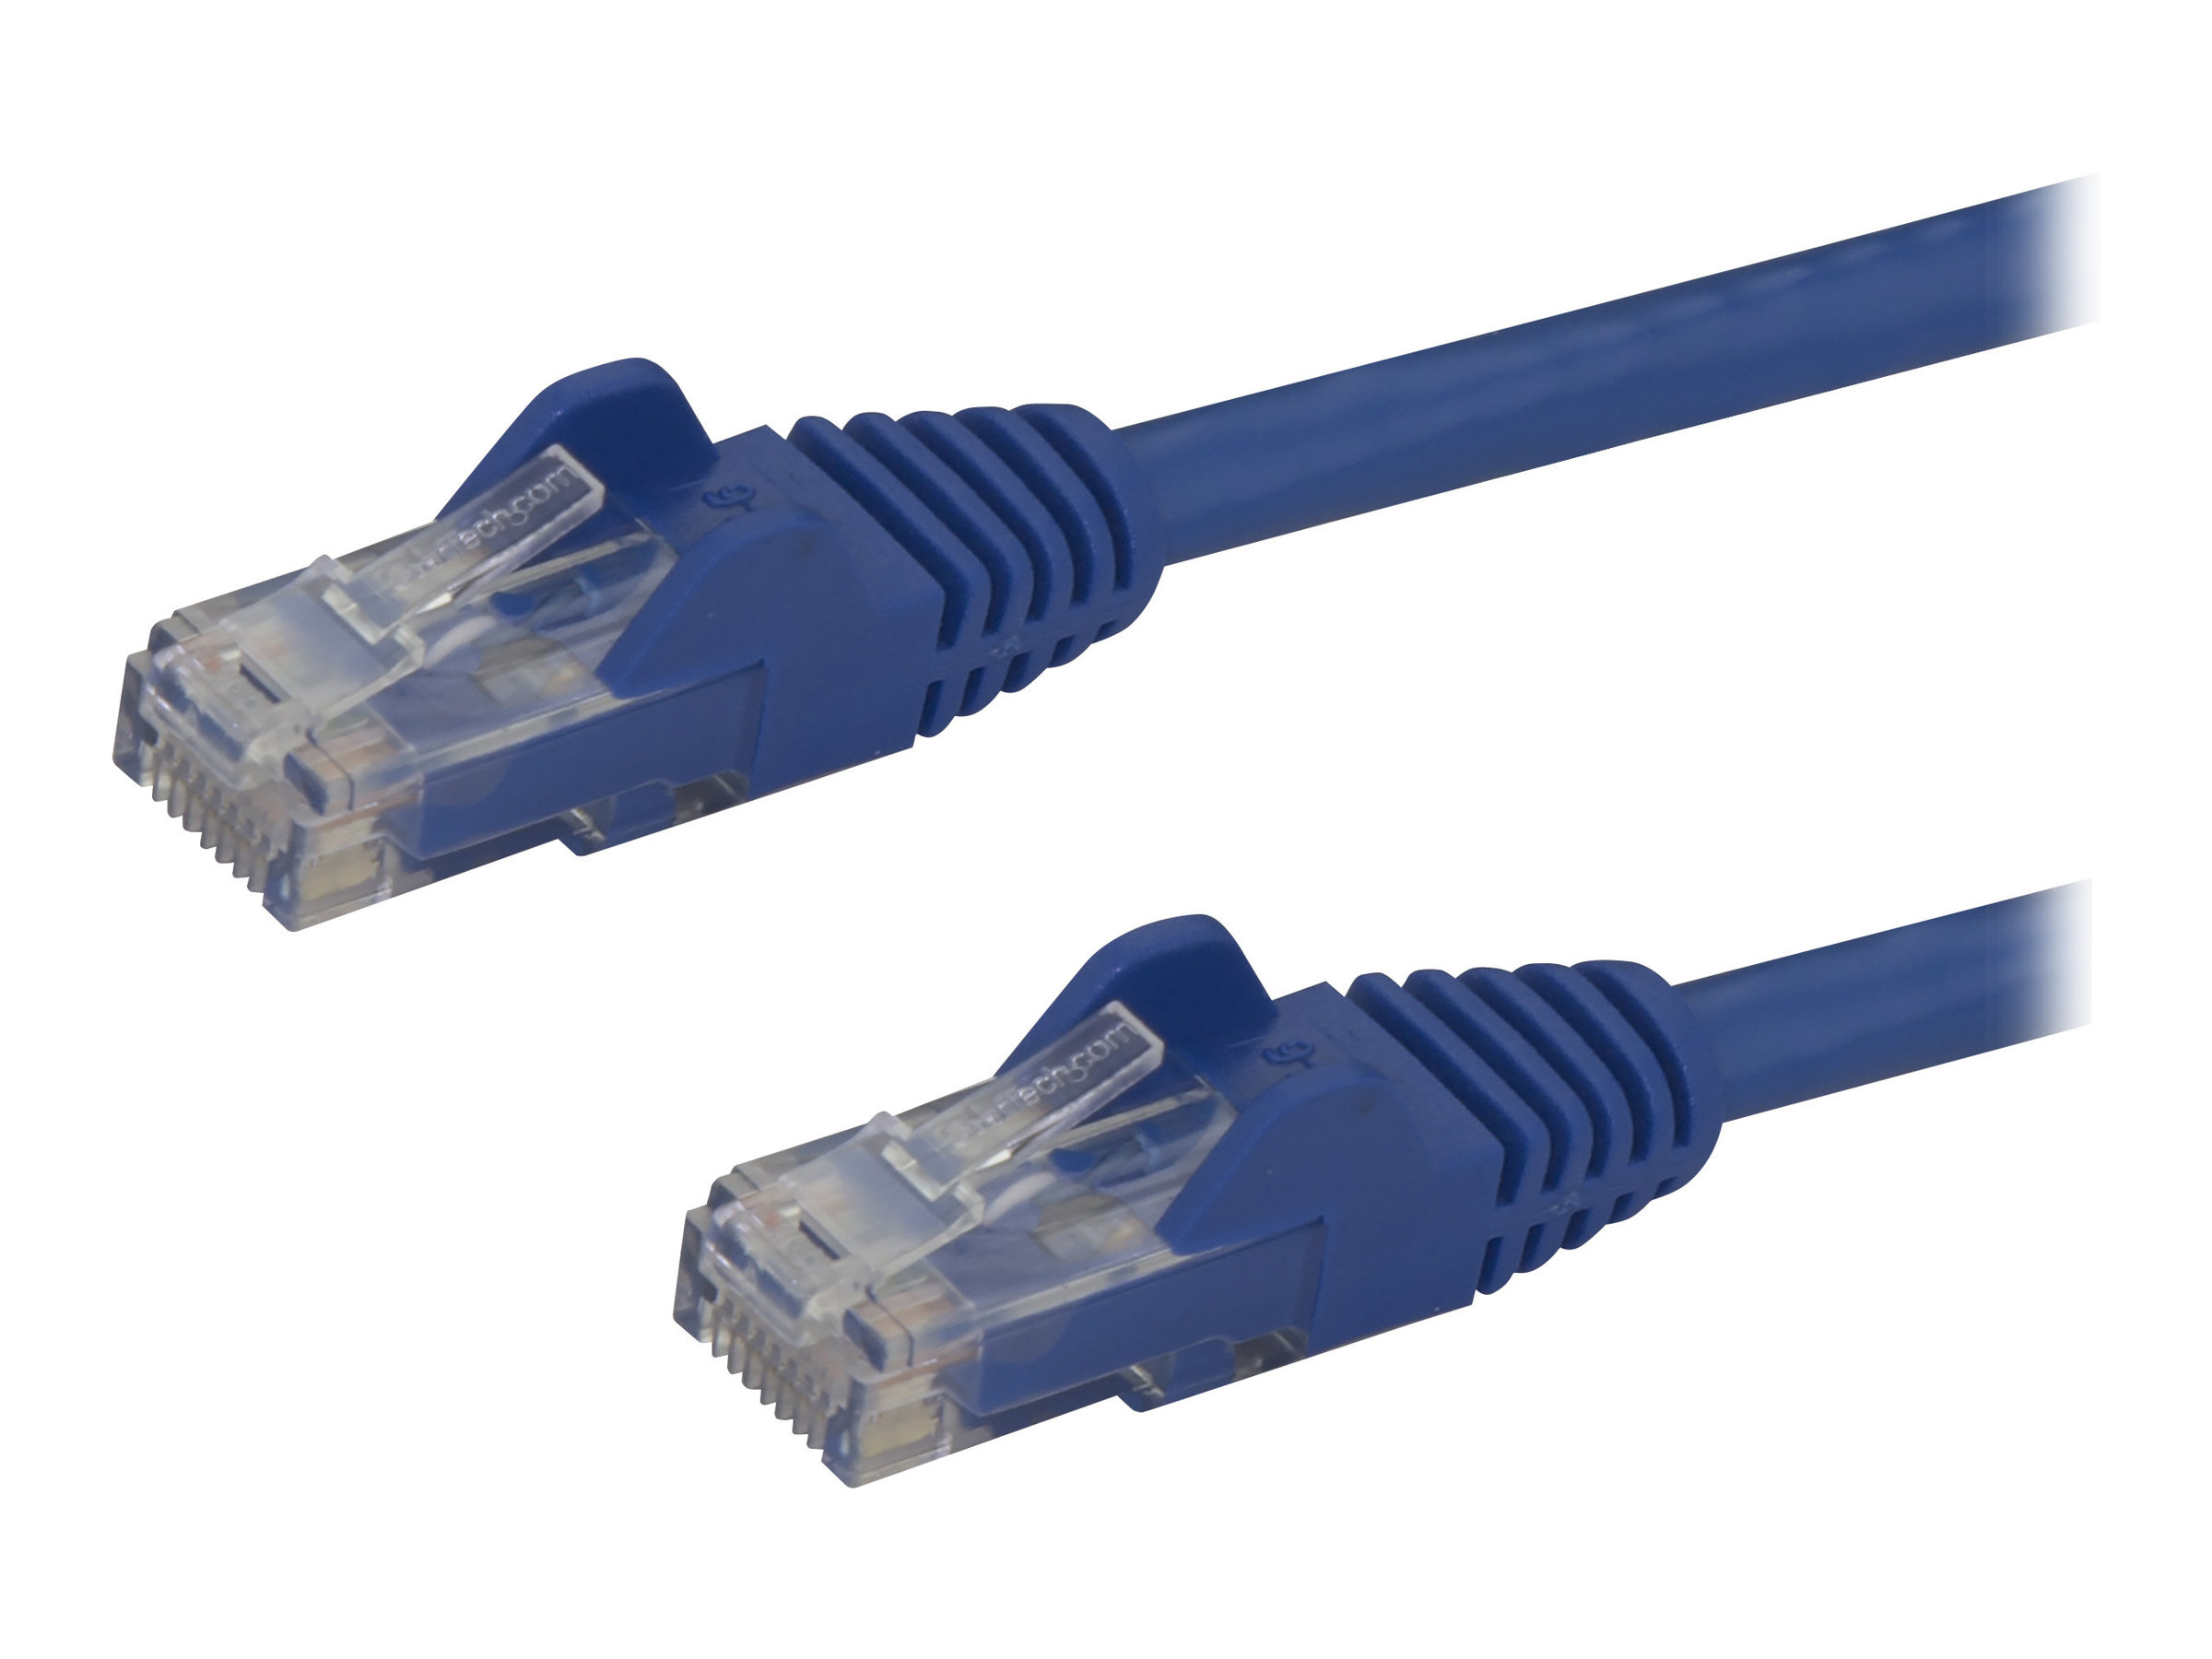 StarTech.com Câble réseau Cat6 Gigabit UTP sans crochet de 2m - Cordon Ethernet RJ45 anti-accroc - Câble patch Mâle / Mâle - Bleu - Cordon de raccordement - RJ-45 (M) pour RJ-45 (M) - 2 m - UTP - CAT 6 - moulé, sans crochet - bleu - N6PATC2MBL - Câbles à paire torsadée